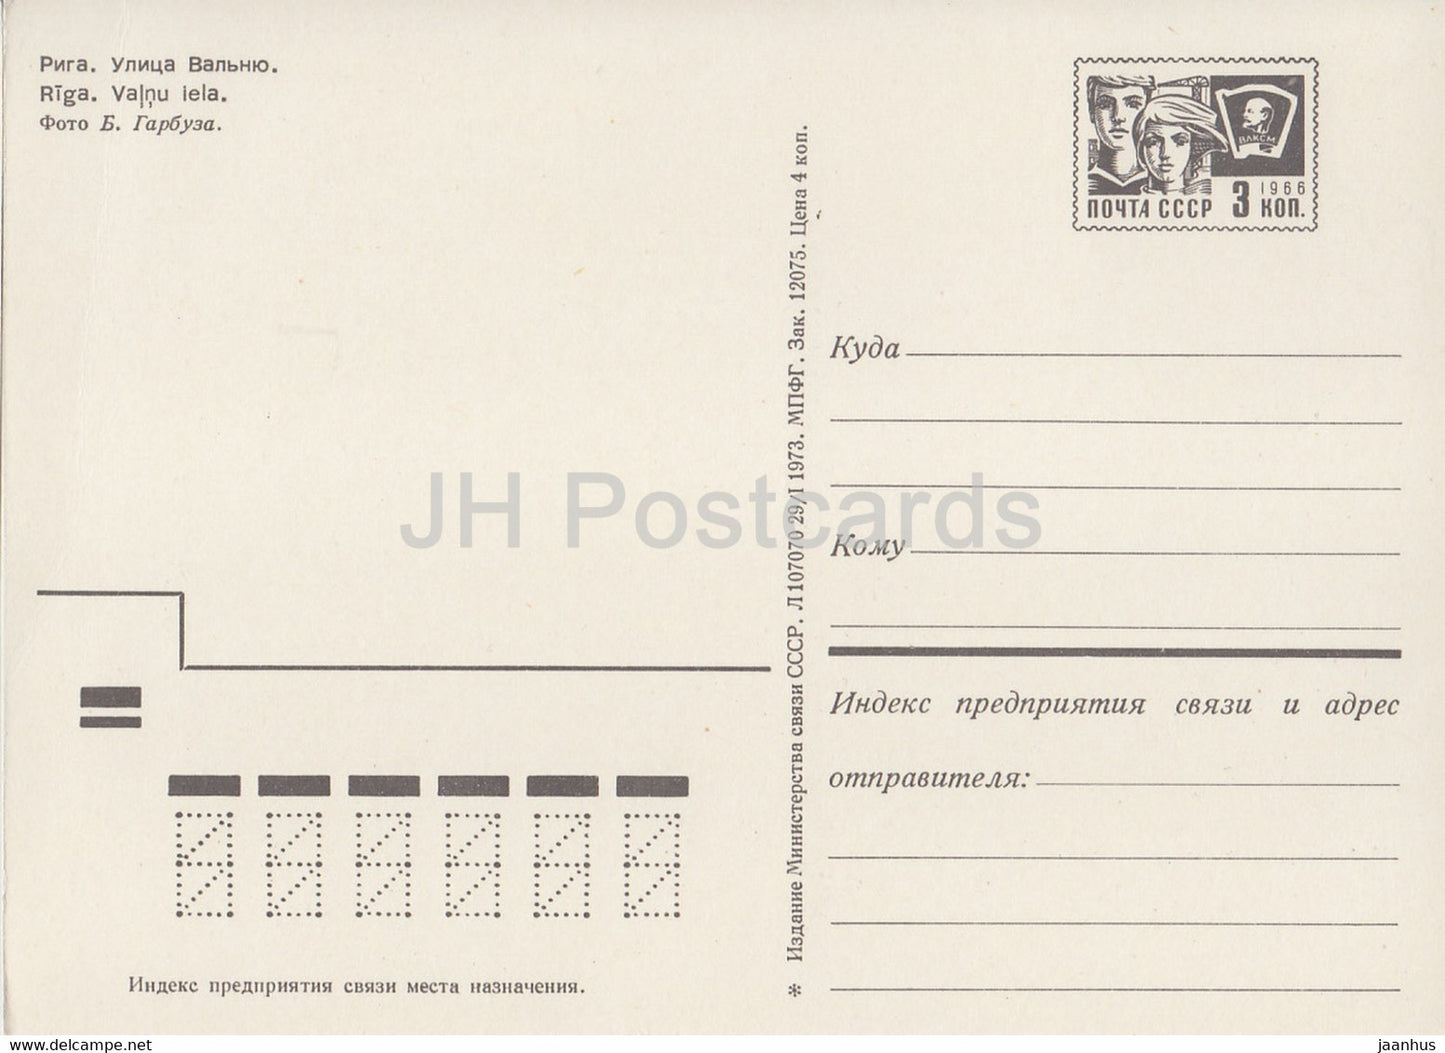 Sigulda - Rue Valnu - voiture Moskvich - entier postal - 1973 - Lettonie URSS - inutilisé